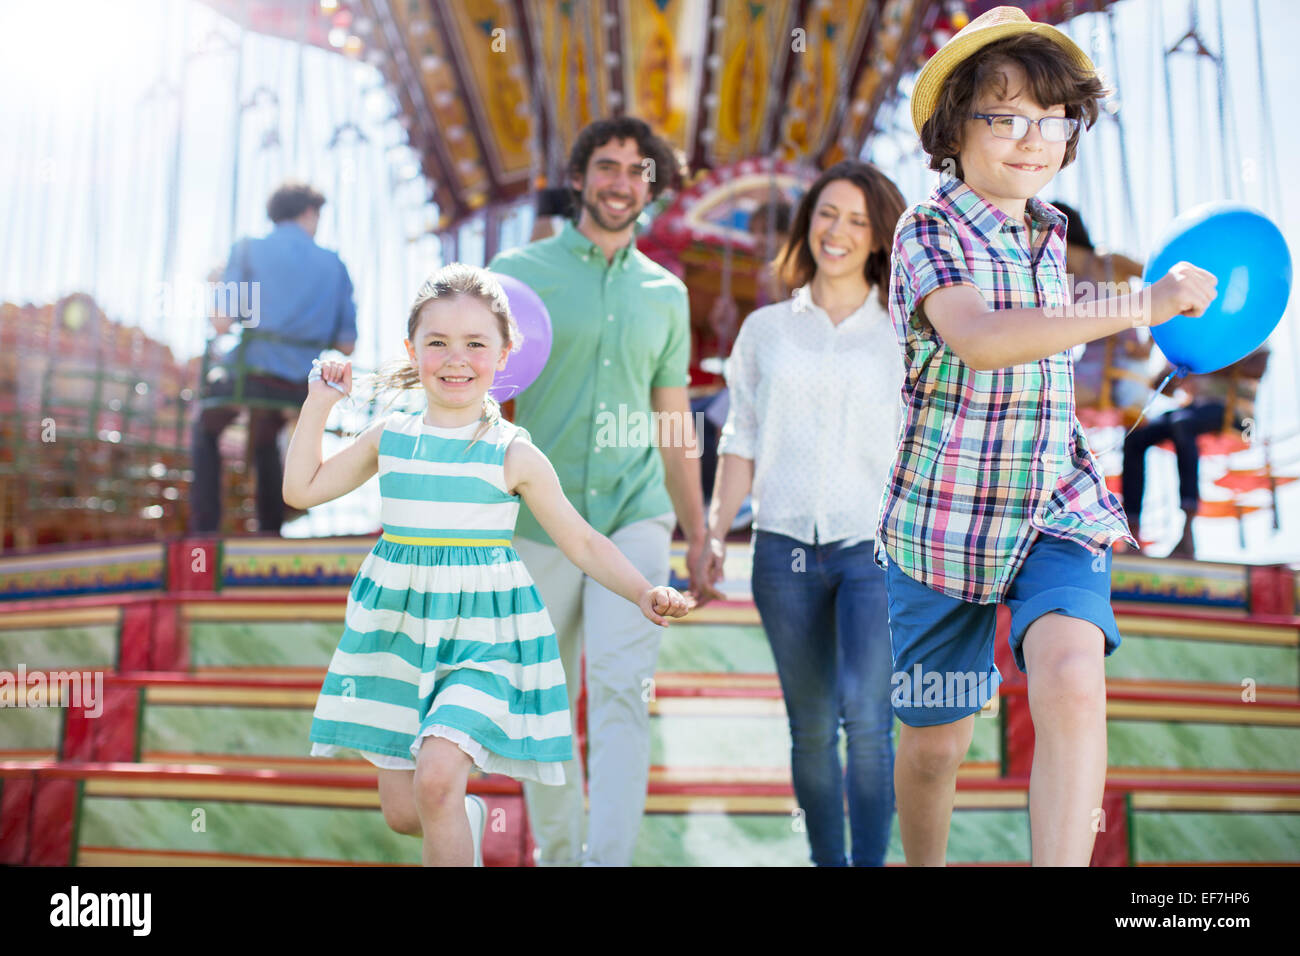 Les enfants courent en face de carrousel, parents après eux Banque D'Images